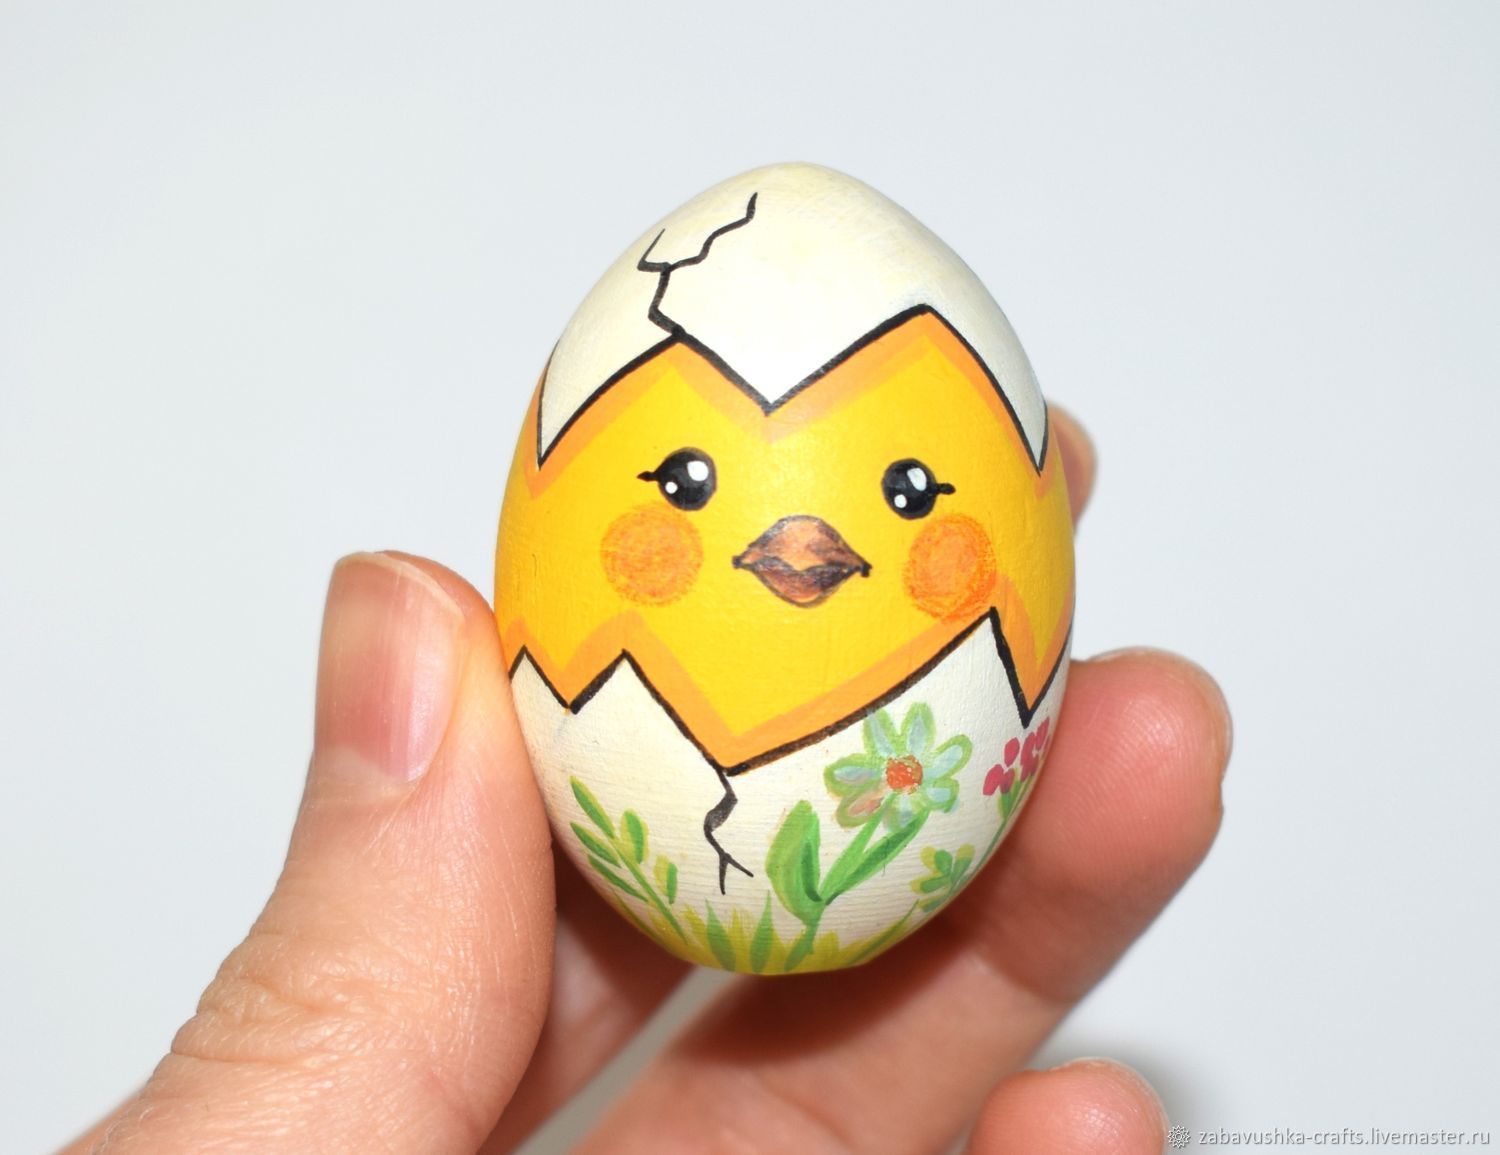 Купить сувенирные яйца из фарфора 🥚 ручной работы в магазине Кисловодского фарфора